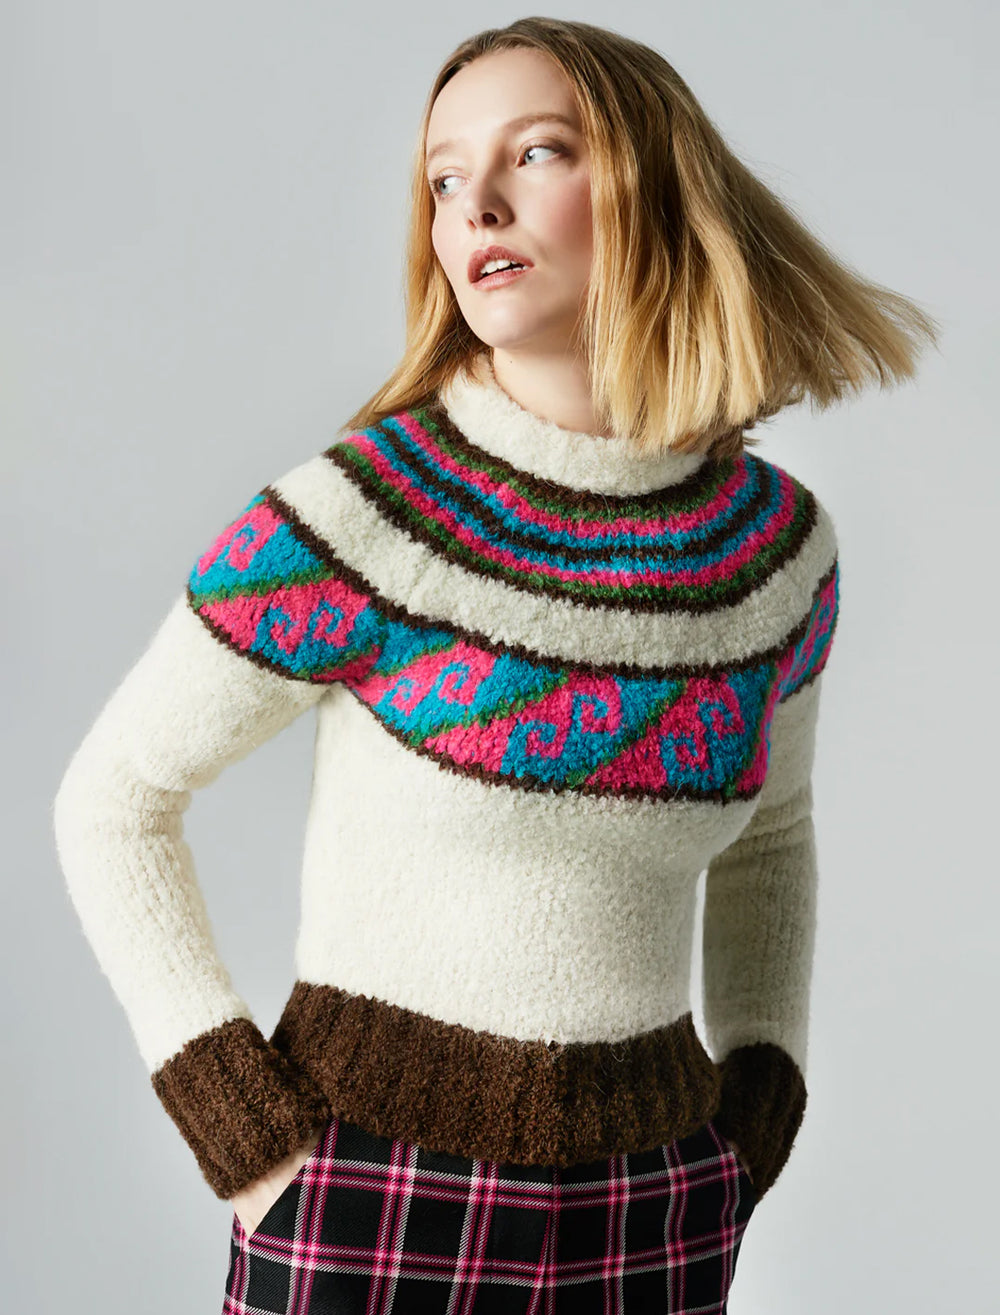 Model wearing Smythe's lopi sweater in birch multi.